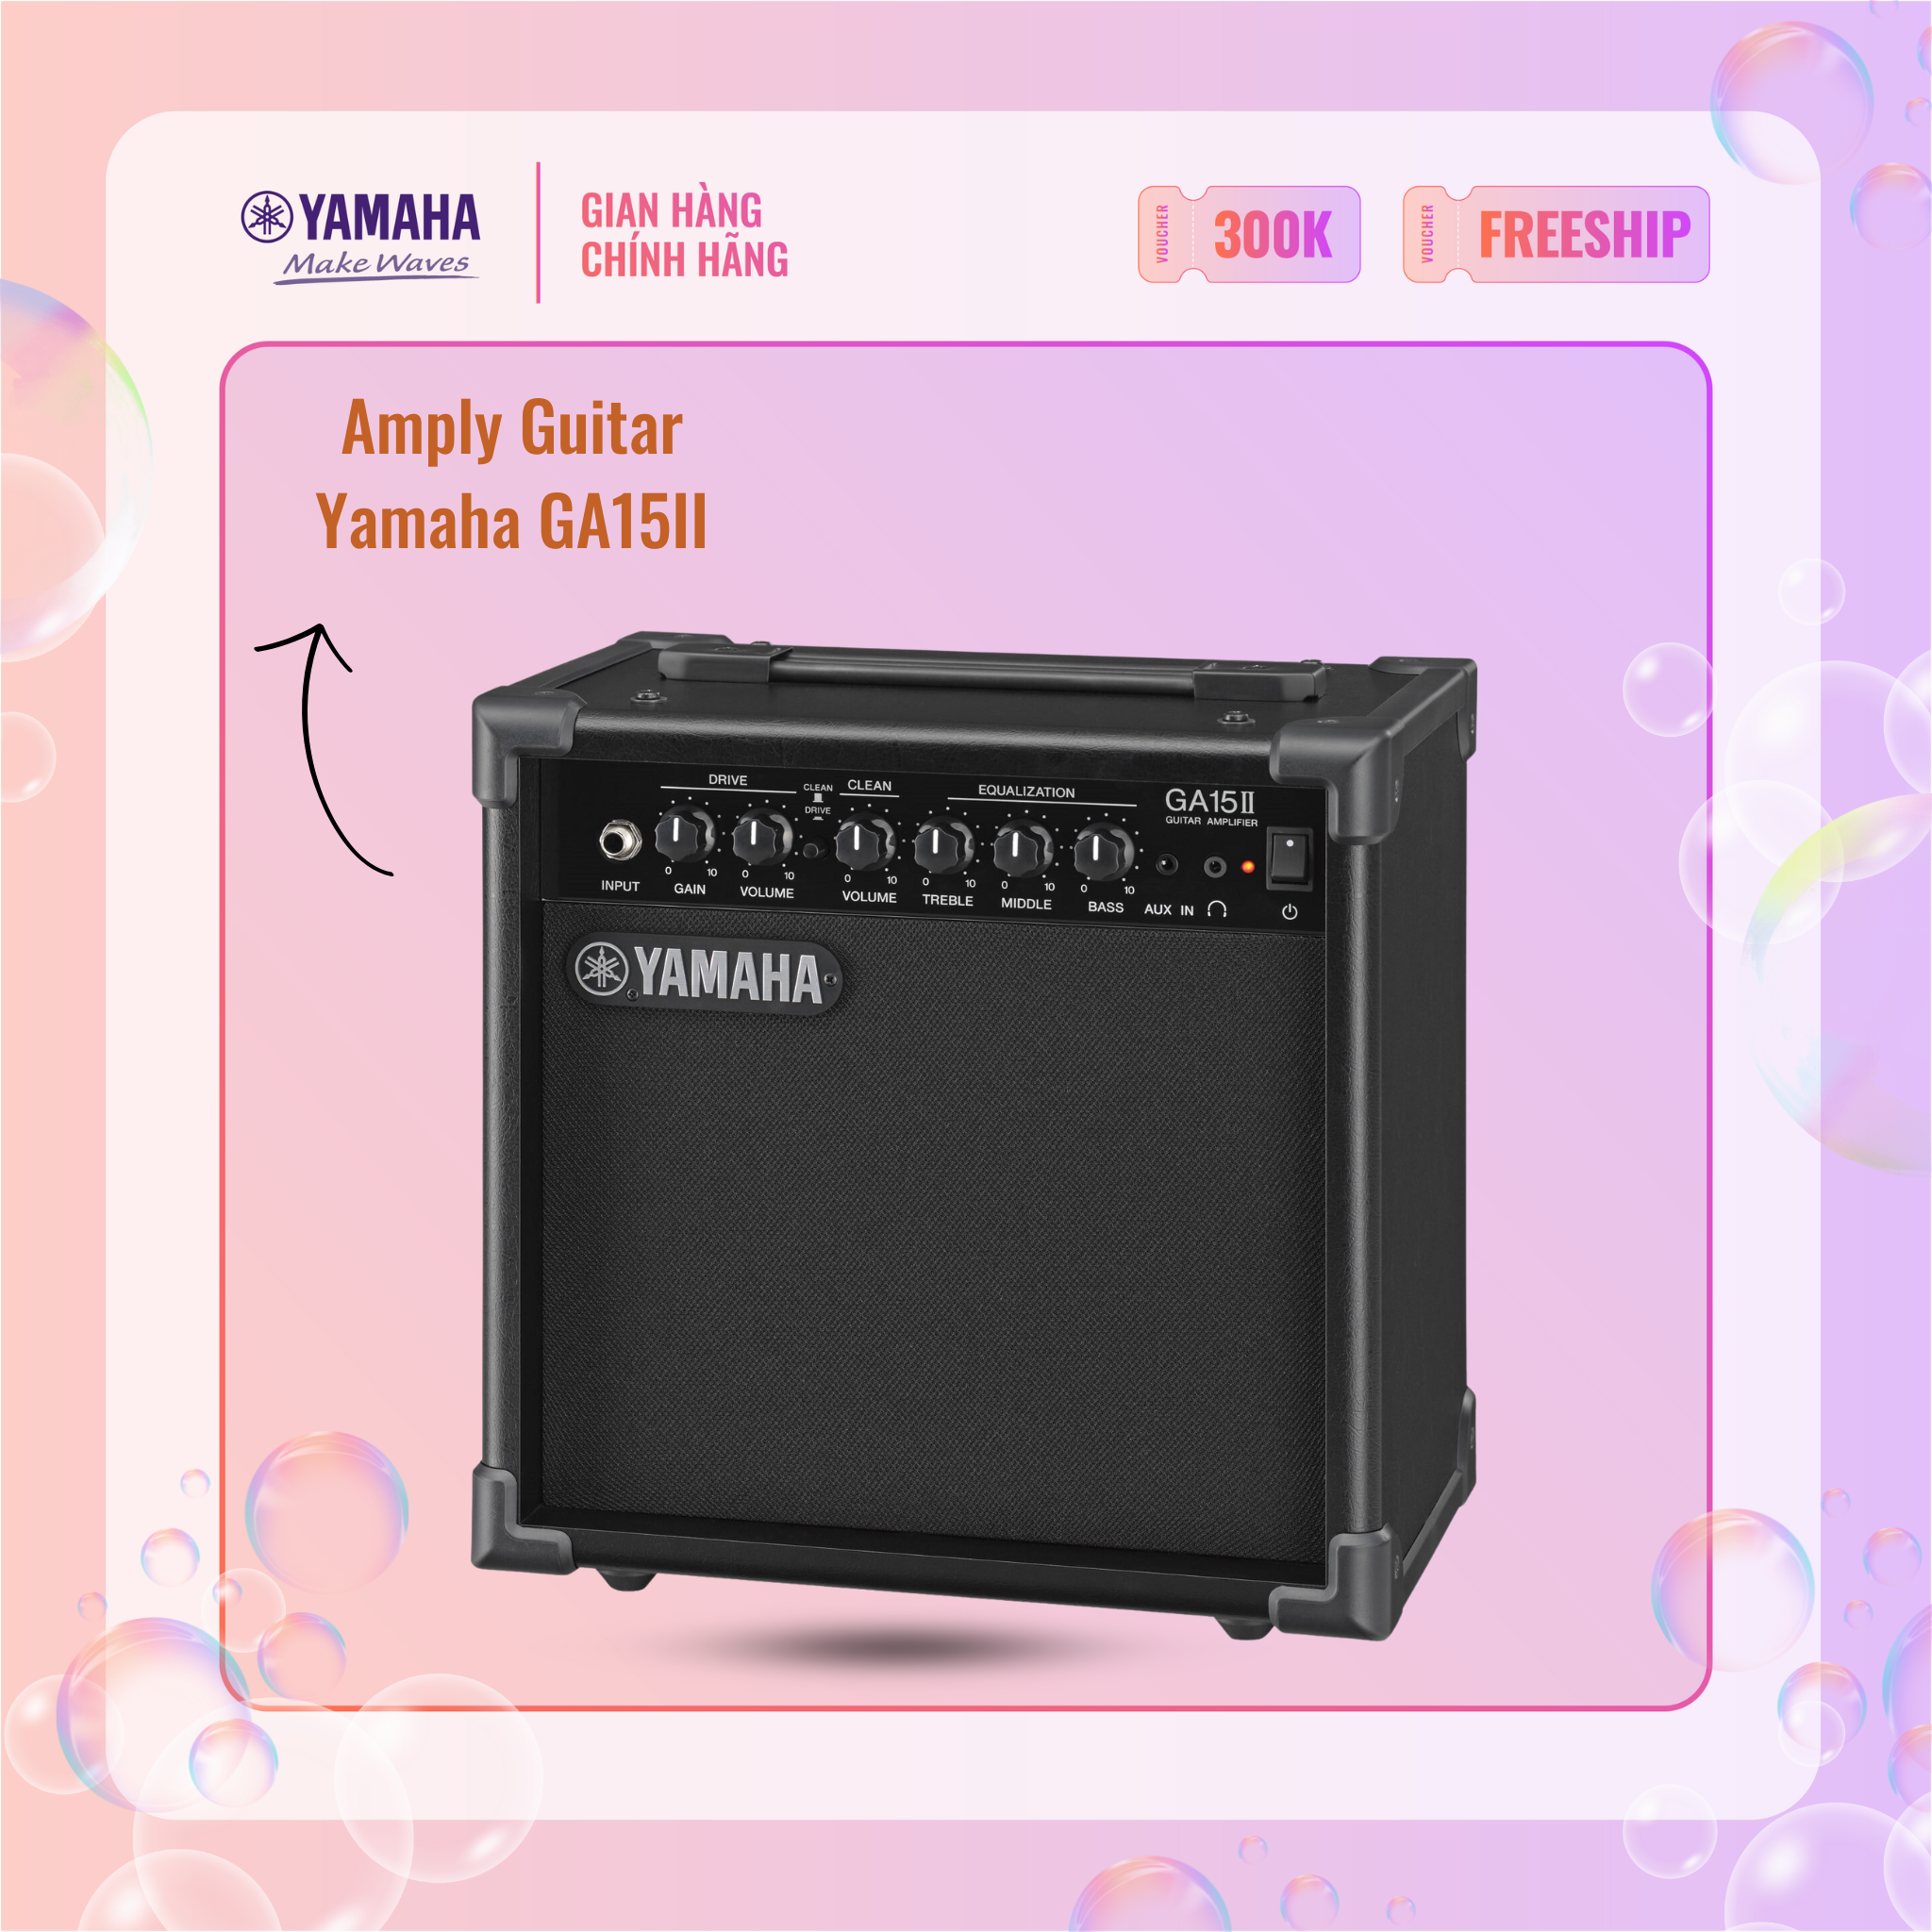 Amply Guitar YAMAHA GA15II - Thiết kế gọn nhẹ, sản phẩm chính hãng